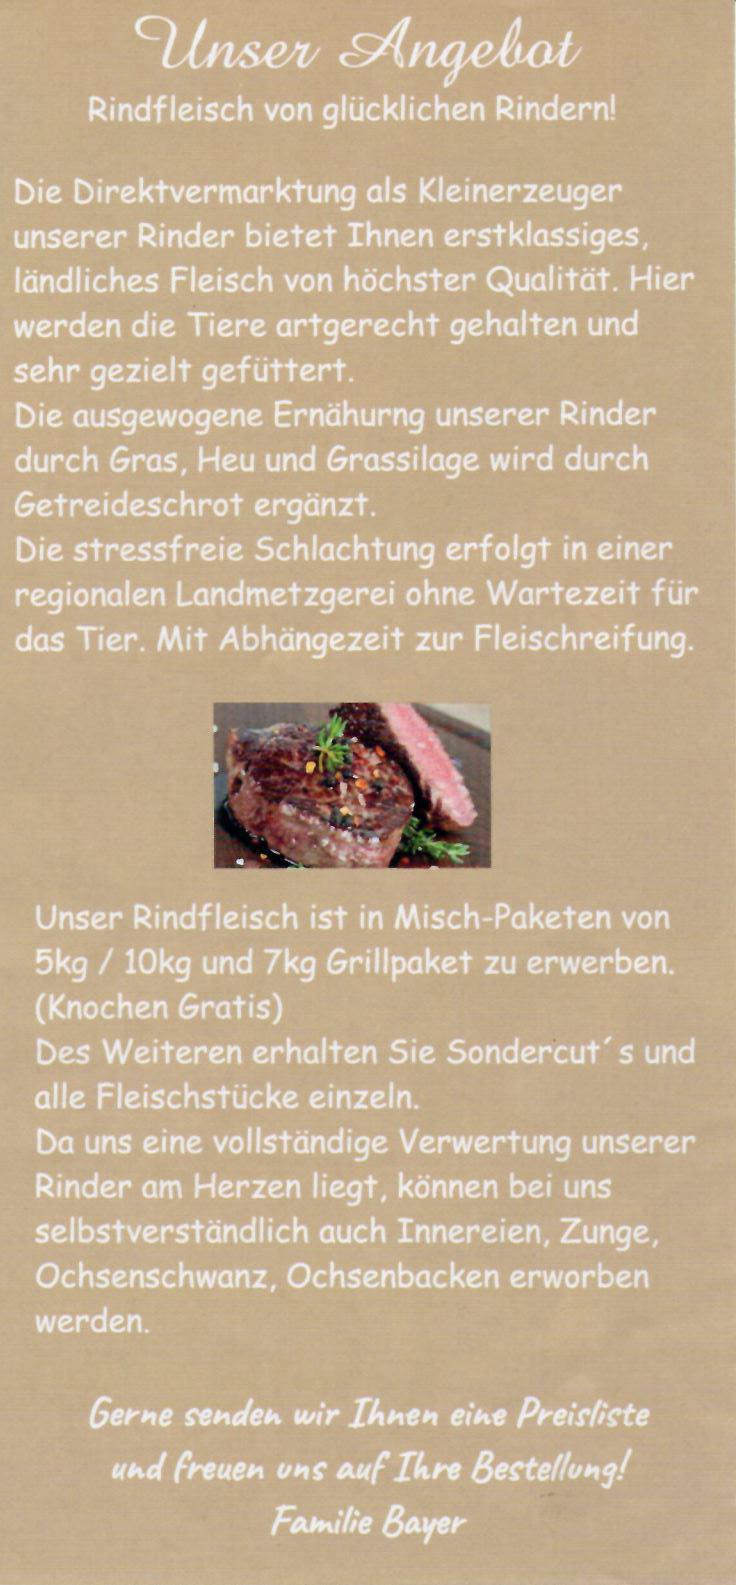 Ferienhof Bayer - Rindfleisch vom Kleinerzeuger